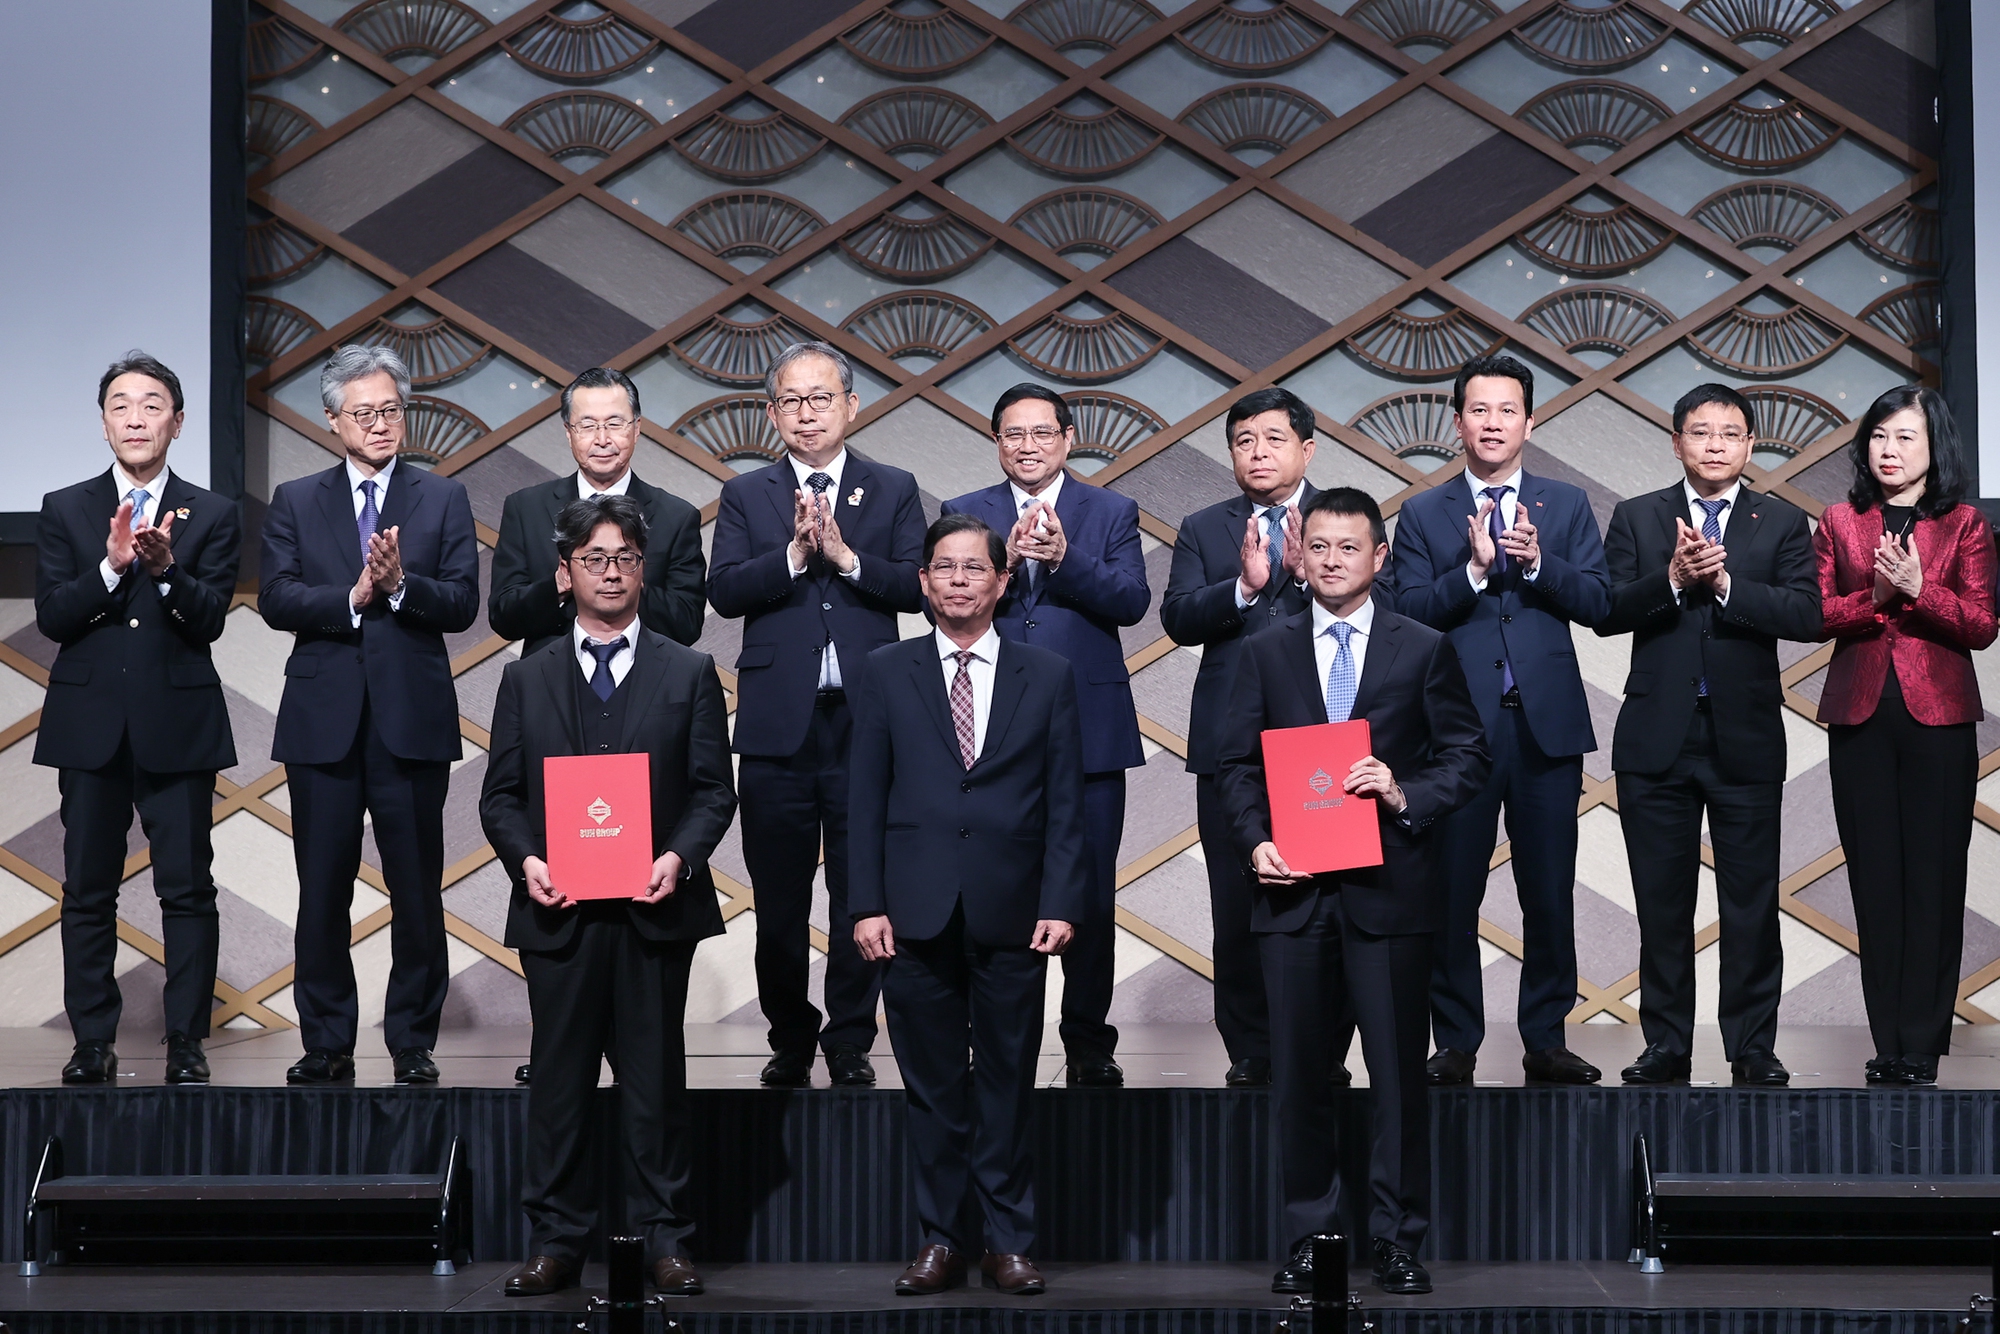 Thủ tướng chứng kiến Tập đoàn Sun Group trao thỏa thuận hợp tác xây dựng tại khu kinh tế Vân Phong với Tập đoàn Taisei, trao thỏa thuận hợp tác đầu tư các cơ sở y tế, chăm sóc sức khỏe với Well Group tại khu kinh tế Vân Phong… - Ảnh: VGP/Nhật Bắc